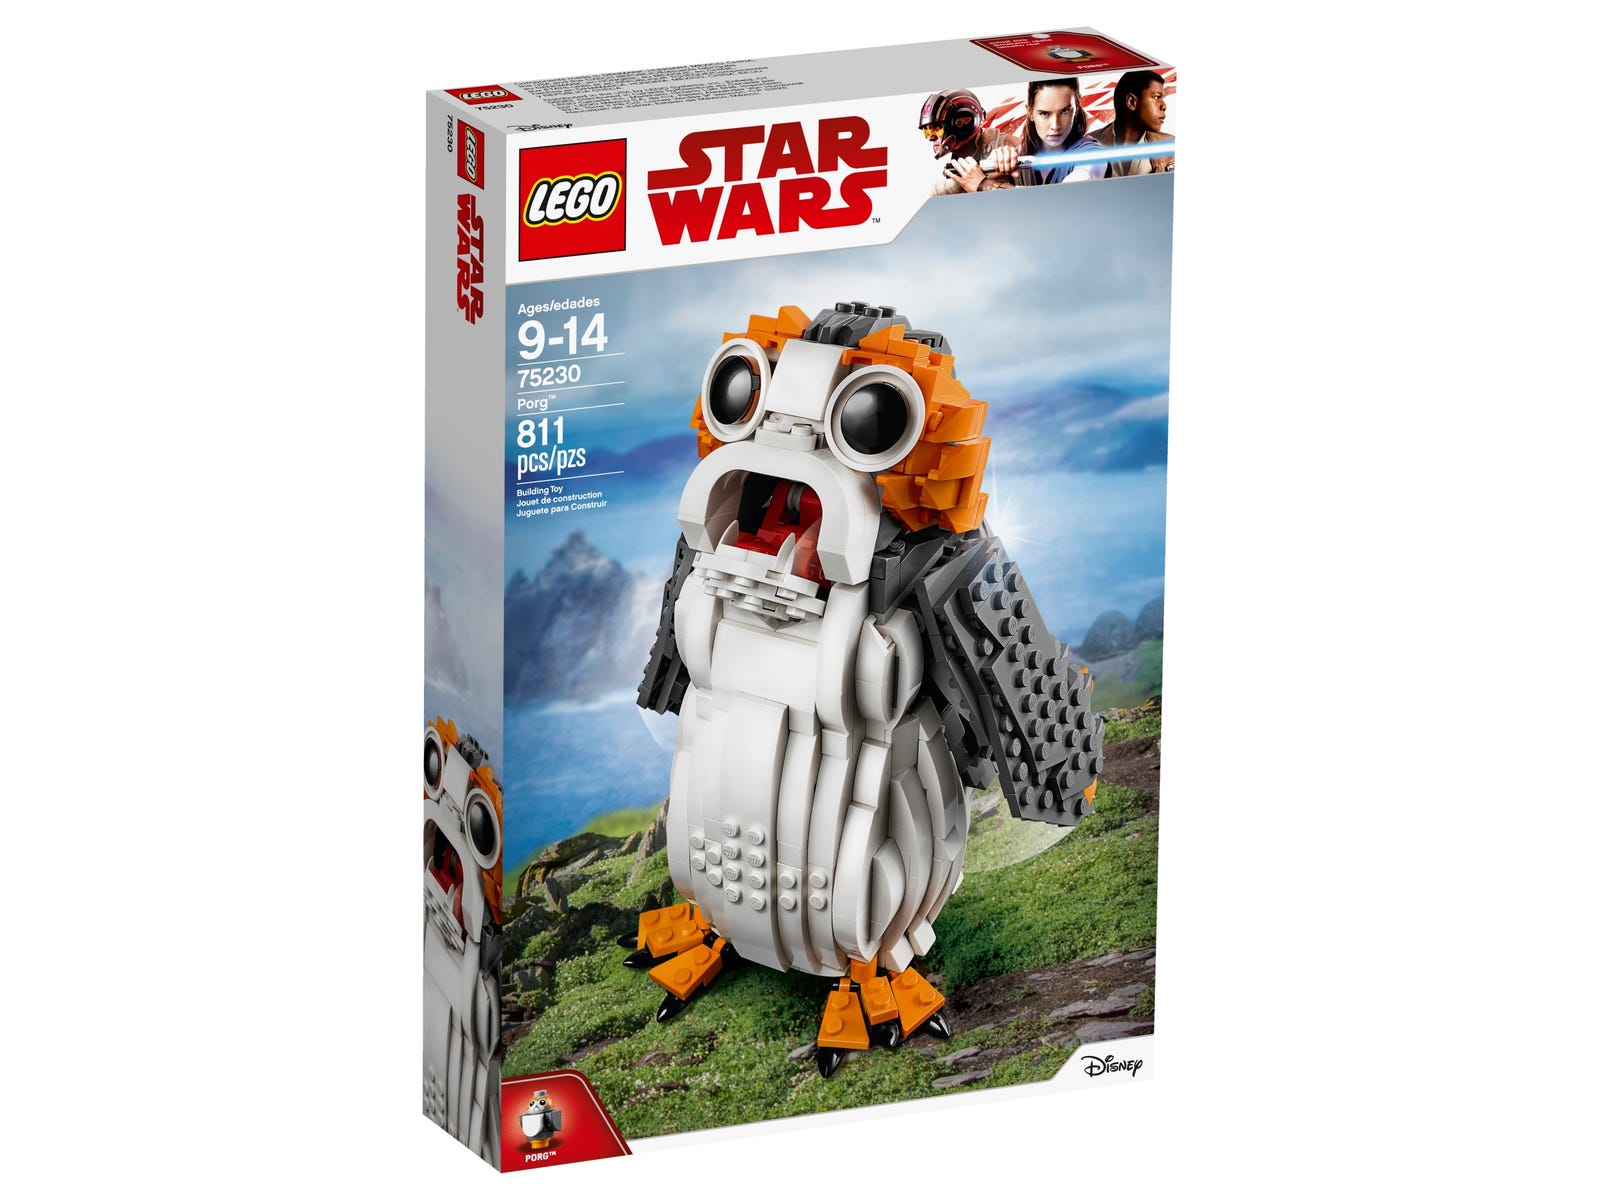 LEGO Star Wars Porg Set 75230 - US